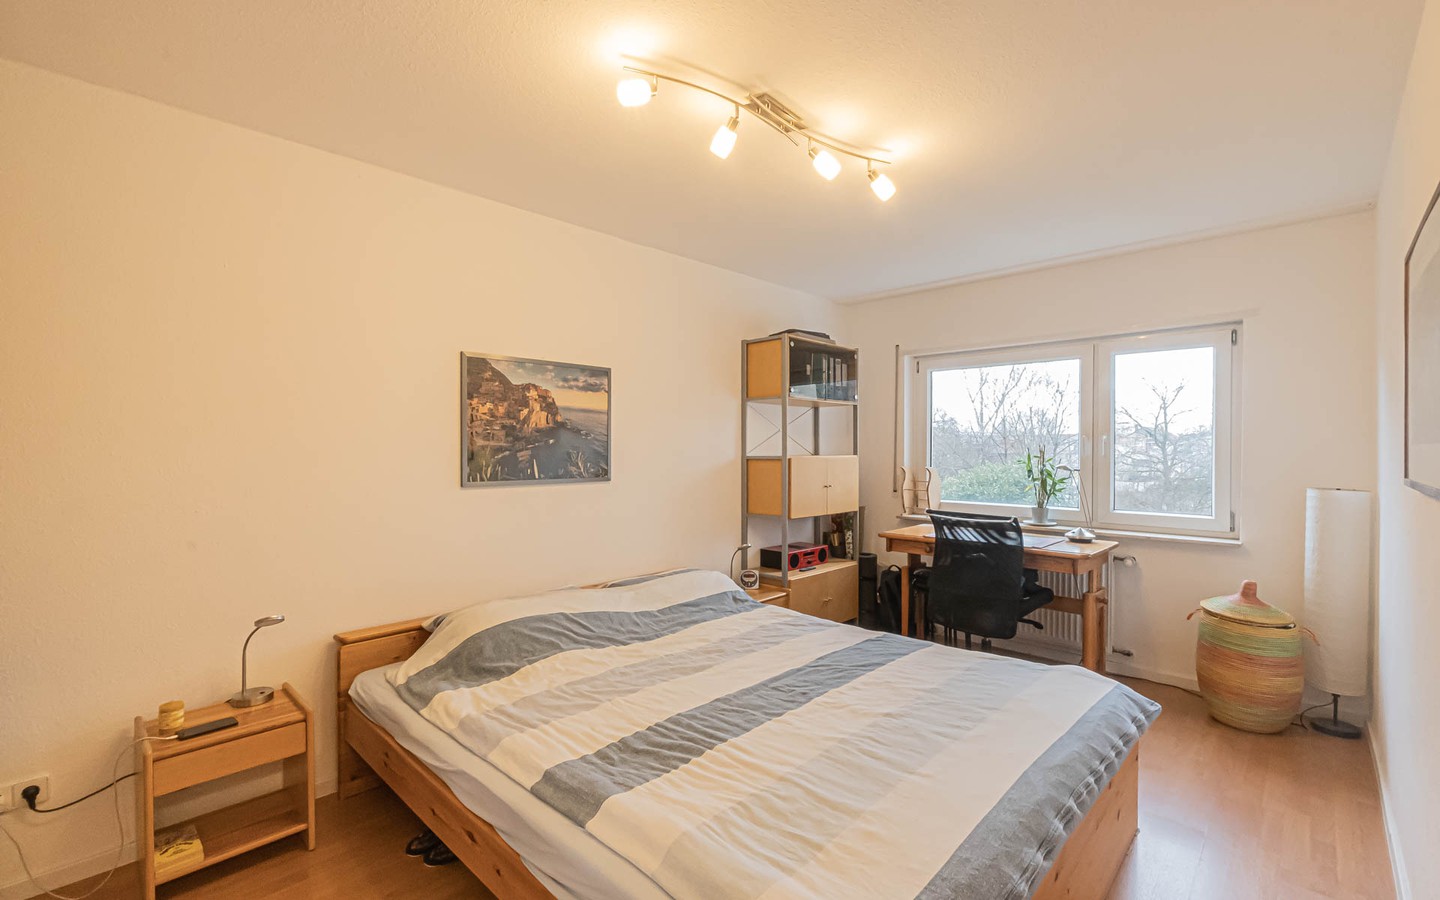 Schlafzimmer - Willkommen in Handschuhsheim: Tolle Zweizimmerwohnung mit Süd-Balkon